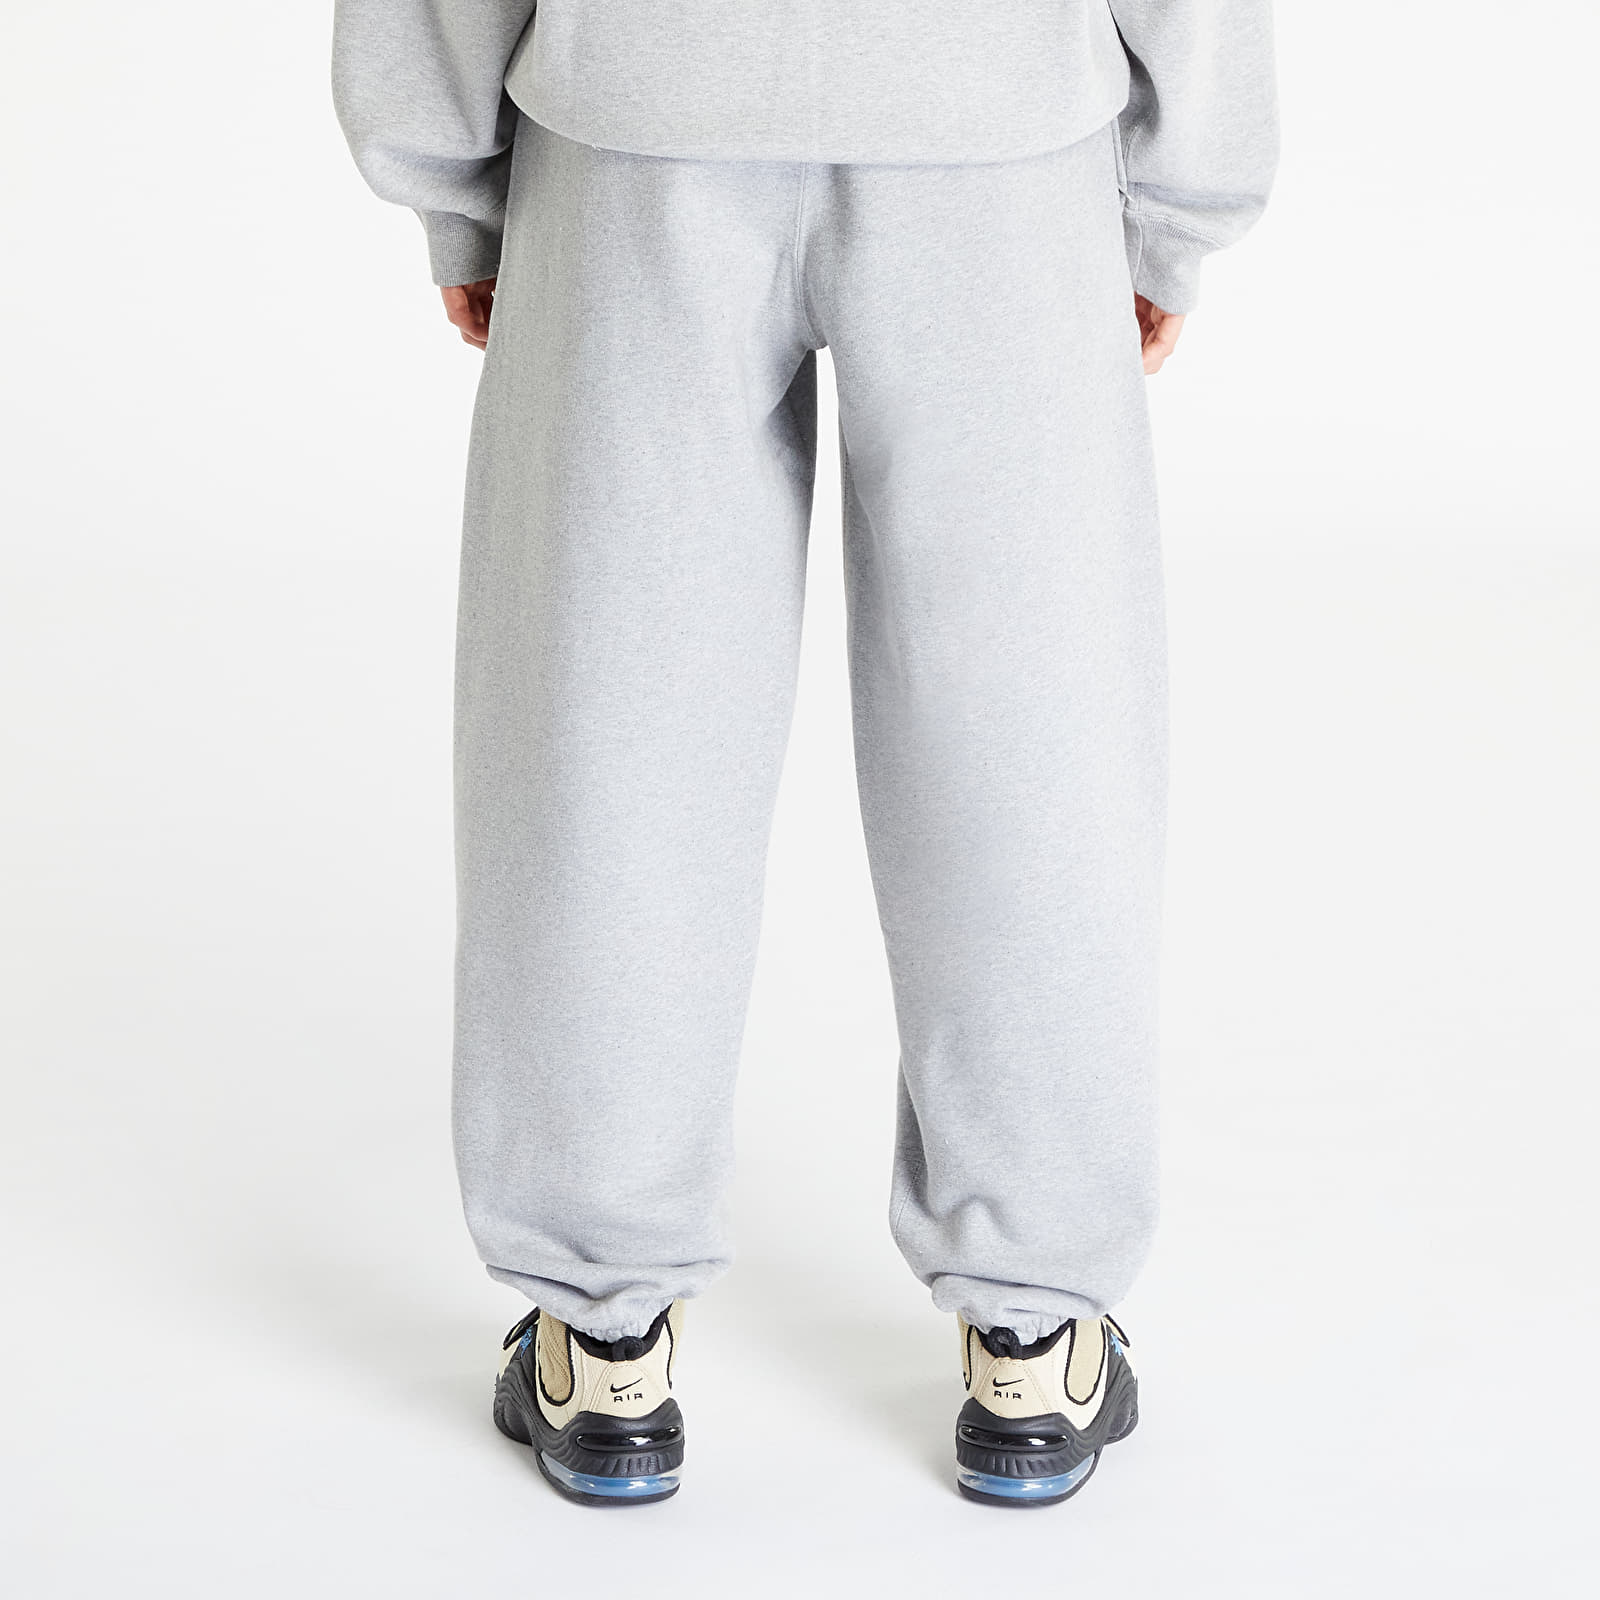 商品の良いところ 【新品】Stussy x Nike Fleece Pants Grey - パンツ